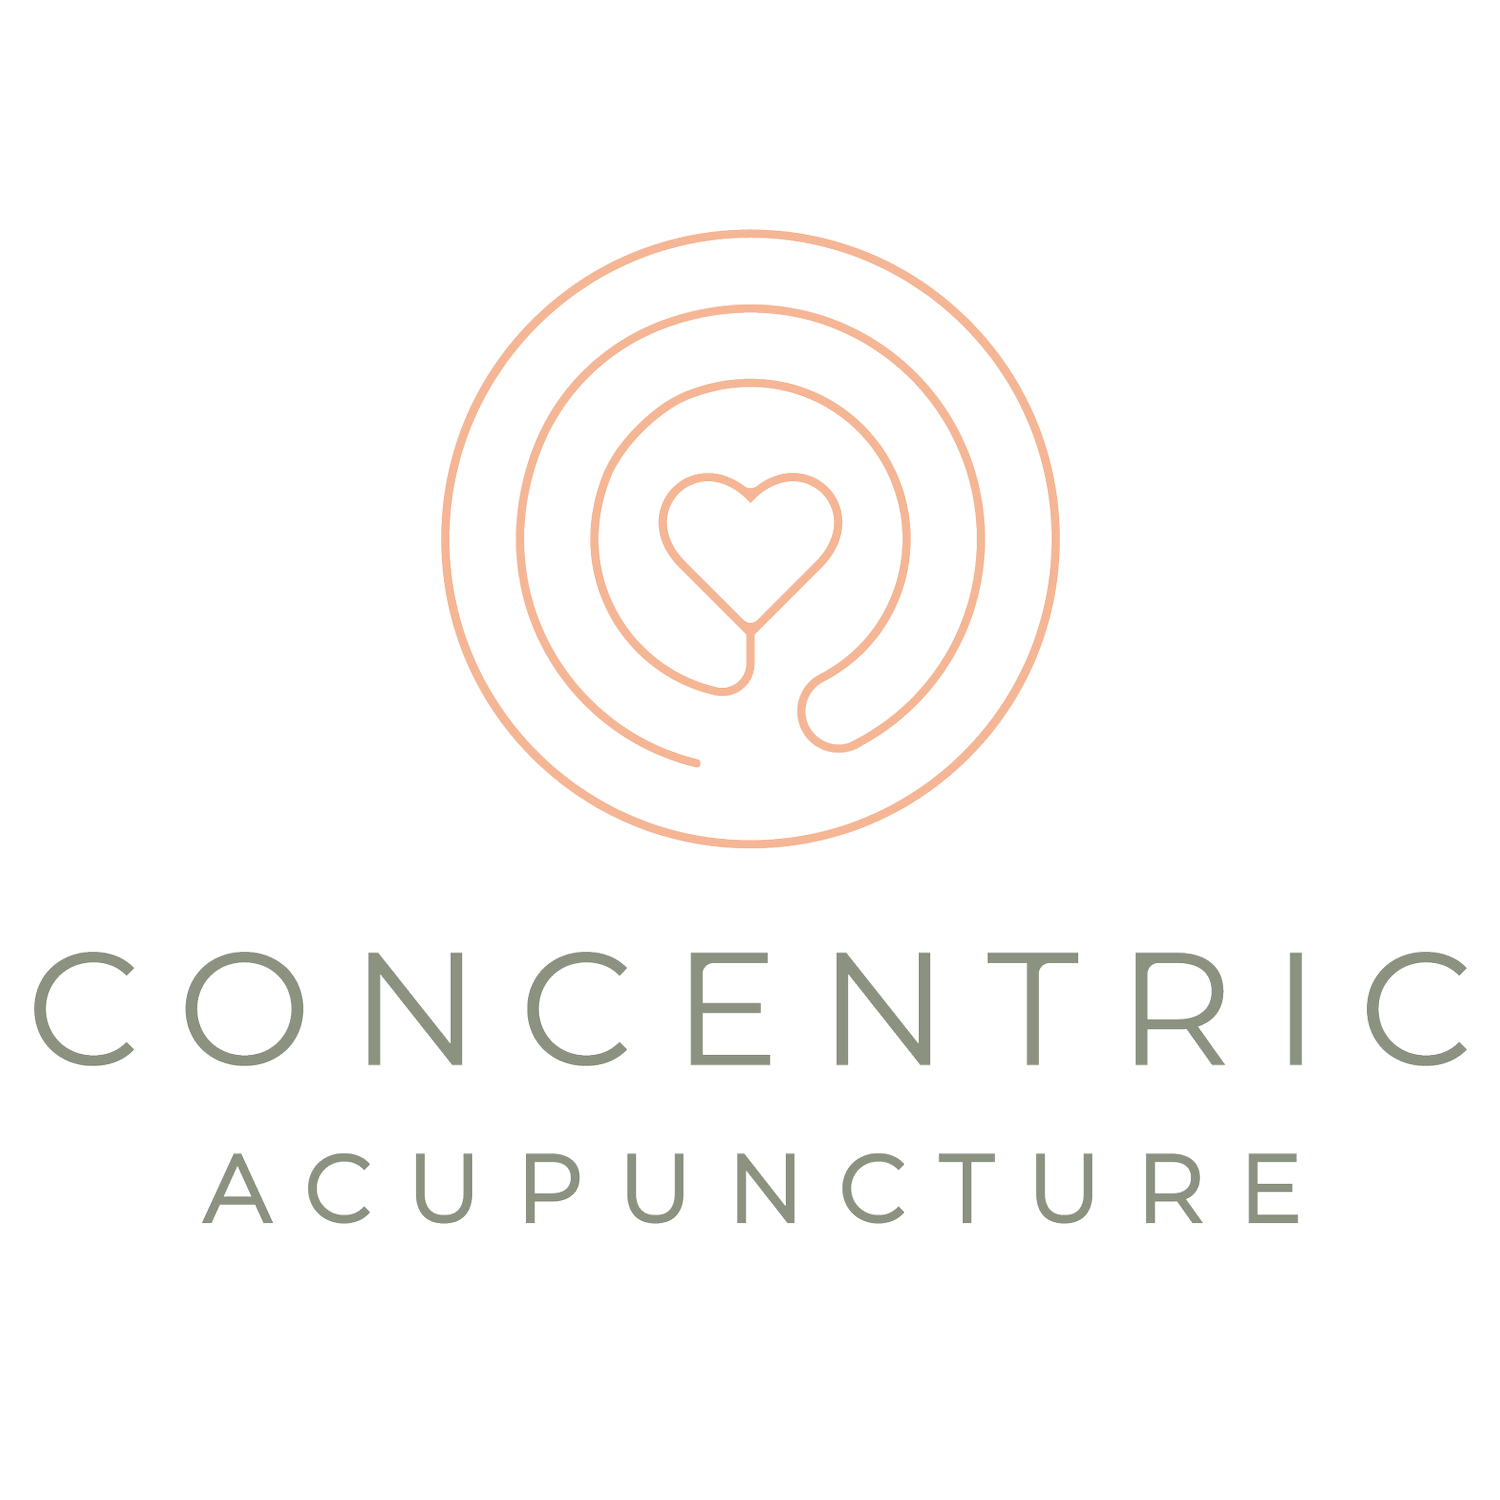 Concentric Acupuncture